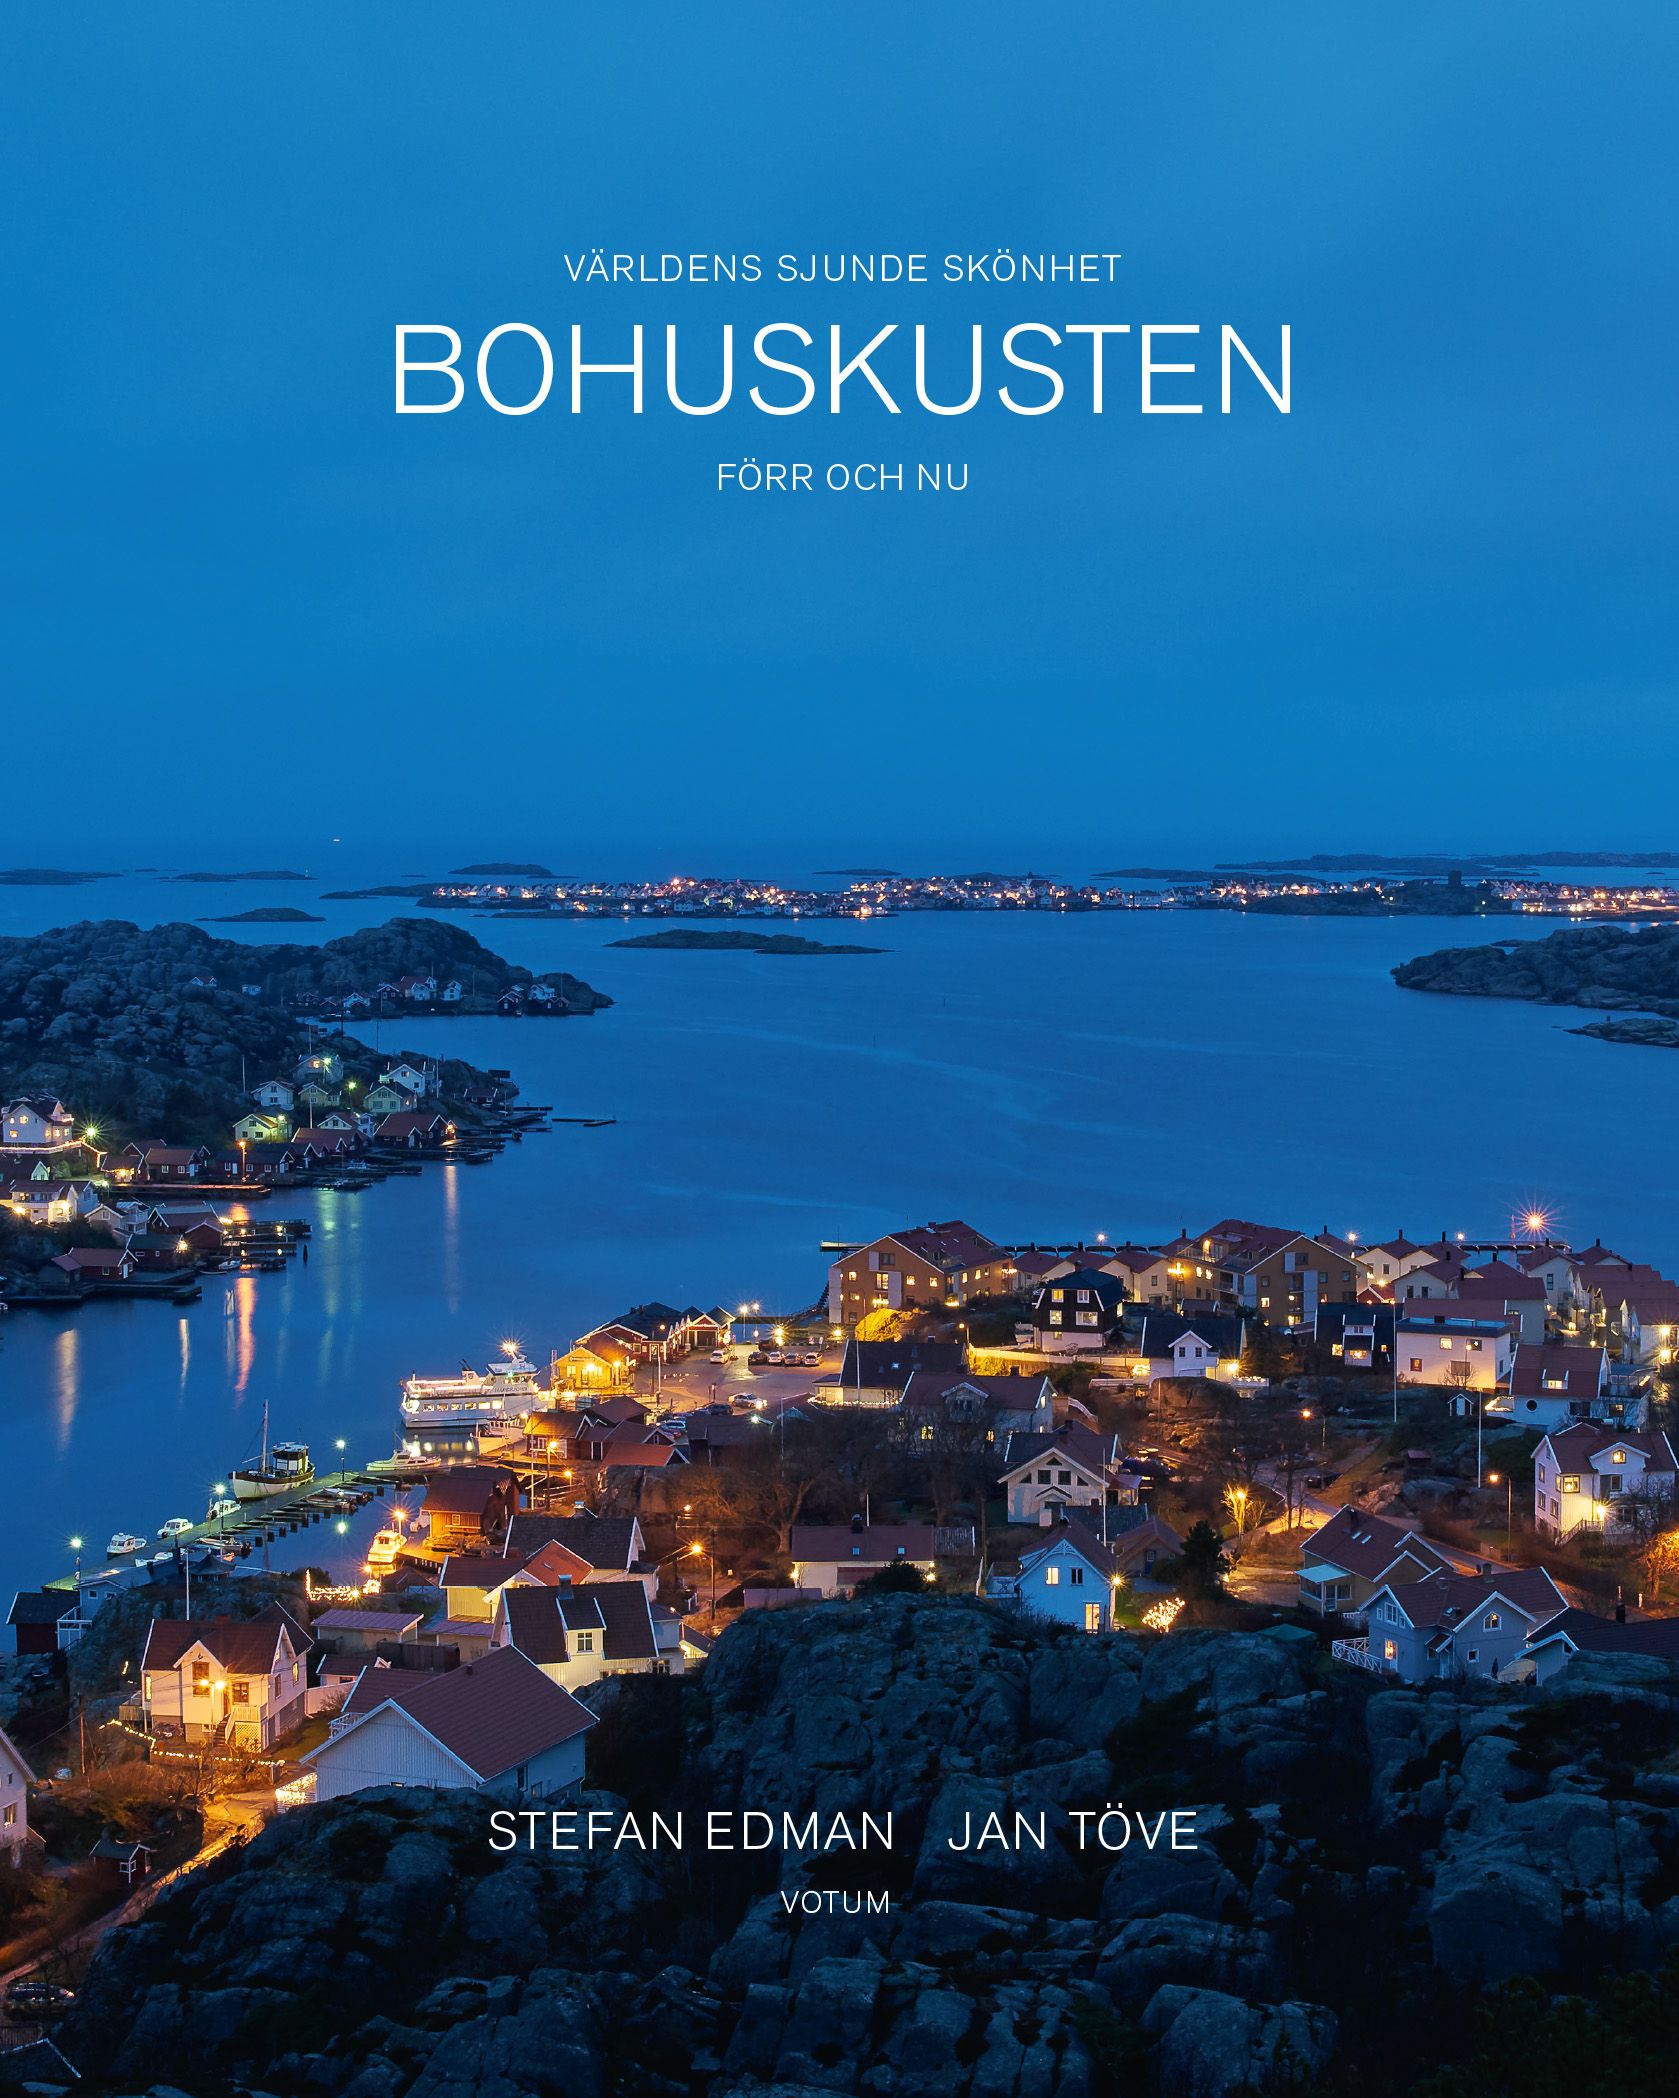 Bohuskusten förr och nu: Världens sjunde skönhet, e-bok av Stefan Edman, Jan Töve